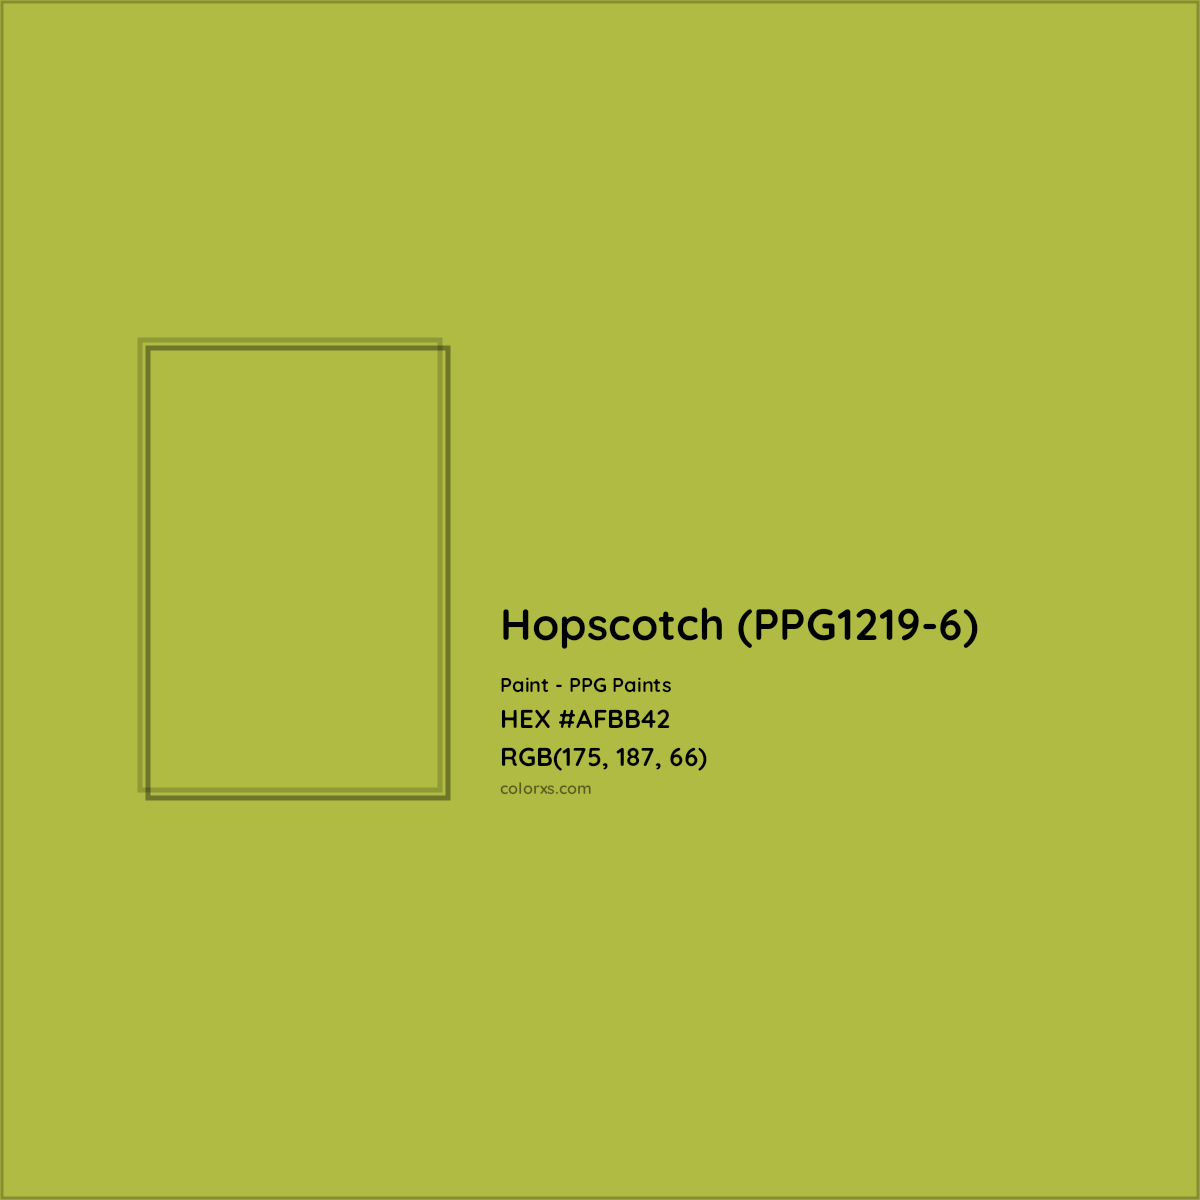 HEX #AFBB42 Hopscotch (PPG1219-6) Paint PPG Paints - Color Code